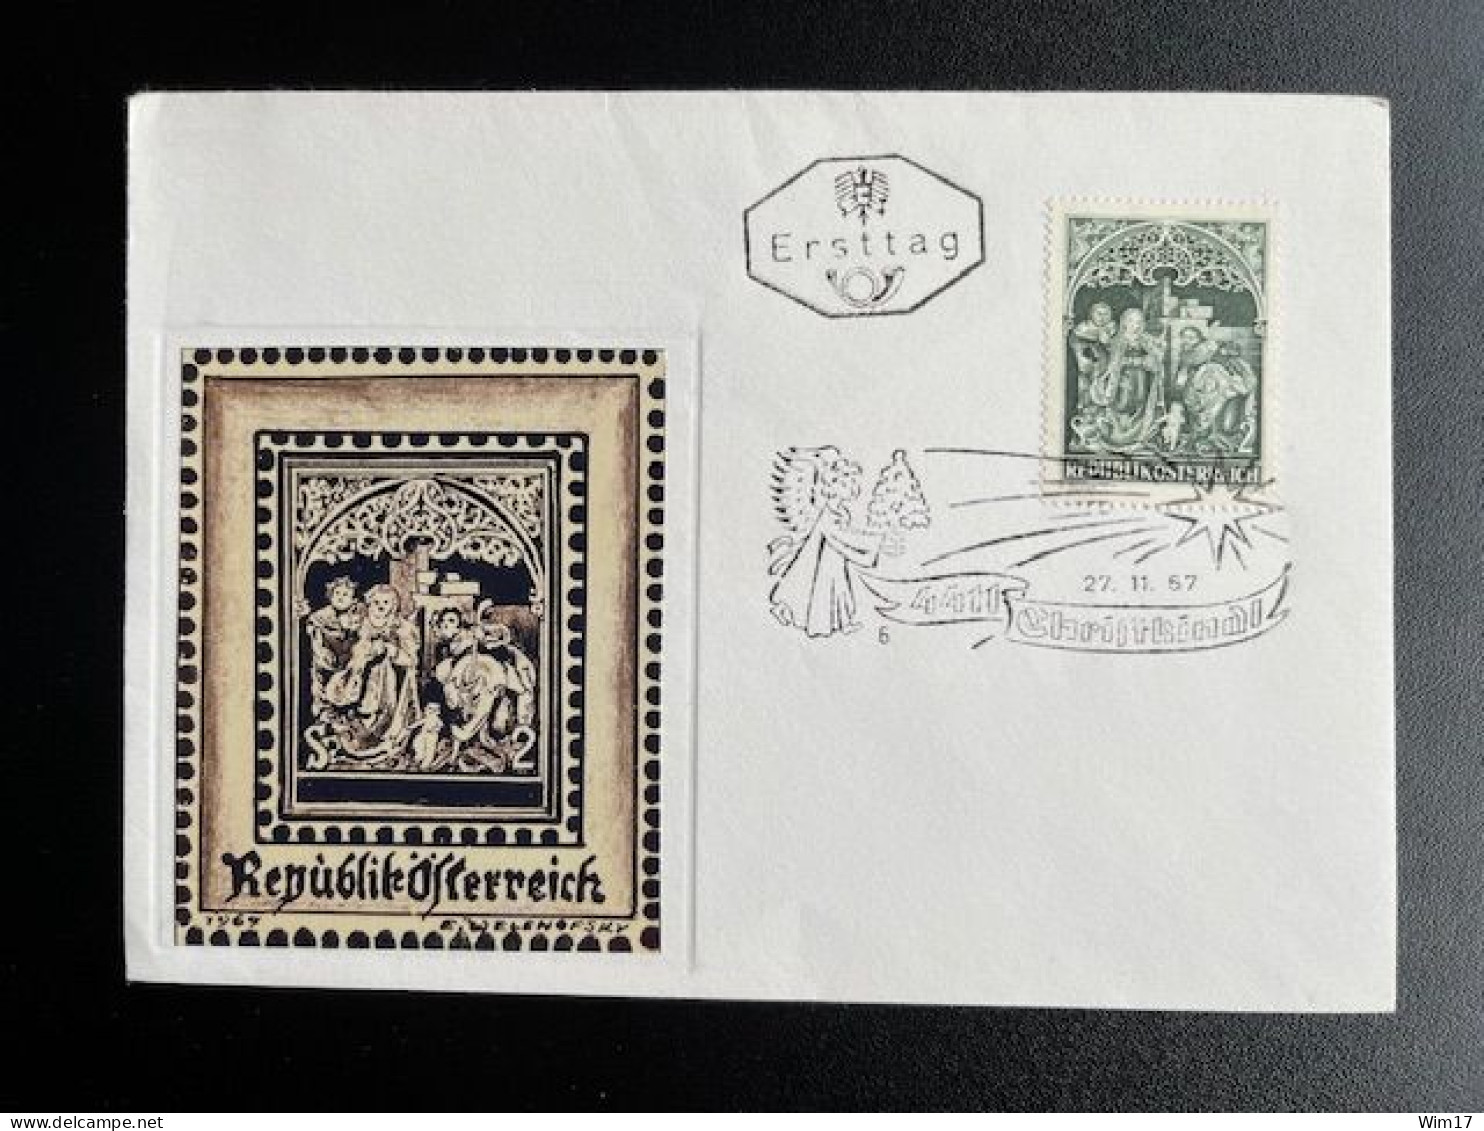 AUSTRIA 1967 FDC CHRISTKINDL 27-11-1967 OOSTENRIJK OSTERREICH - Briefe U. Dokumente